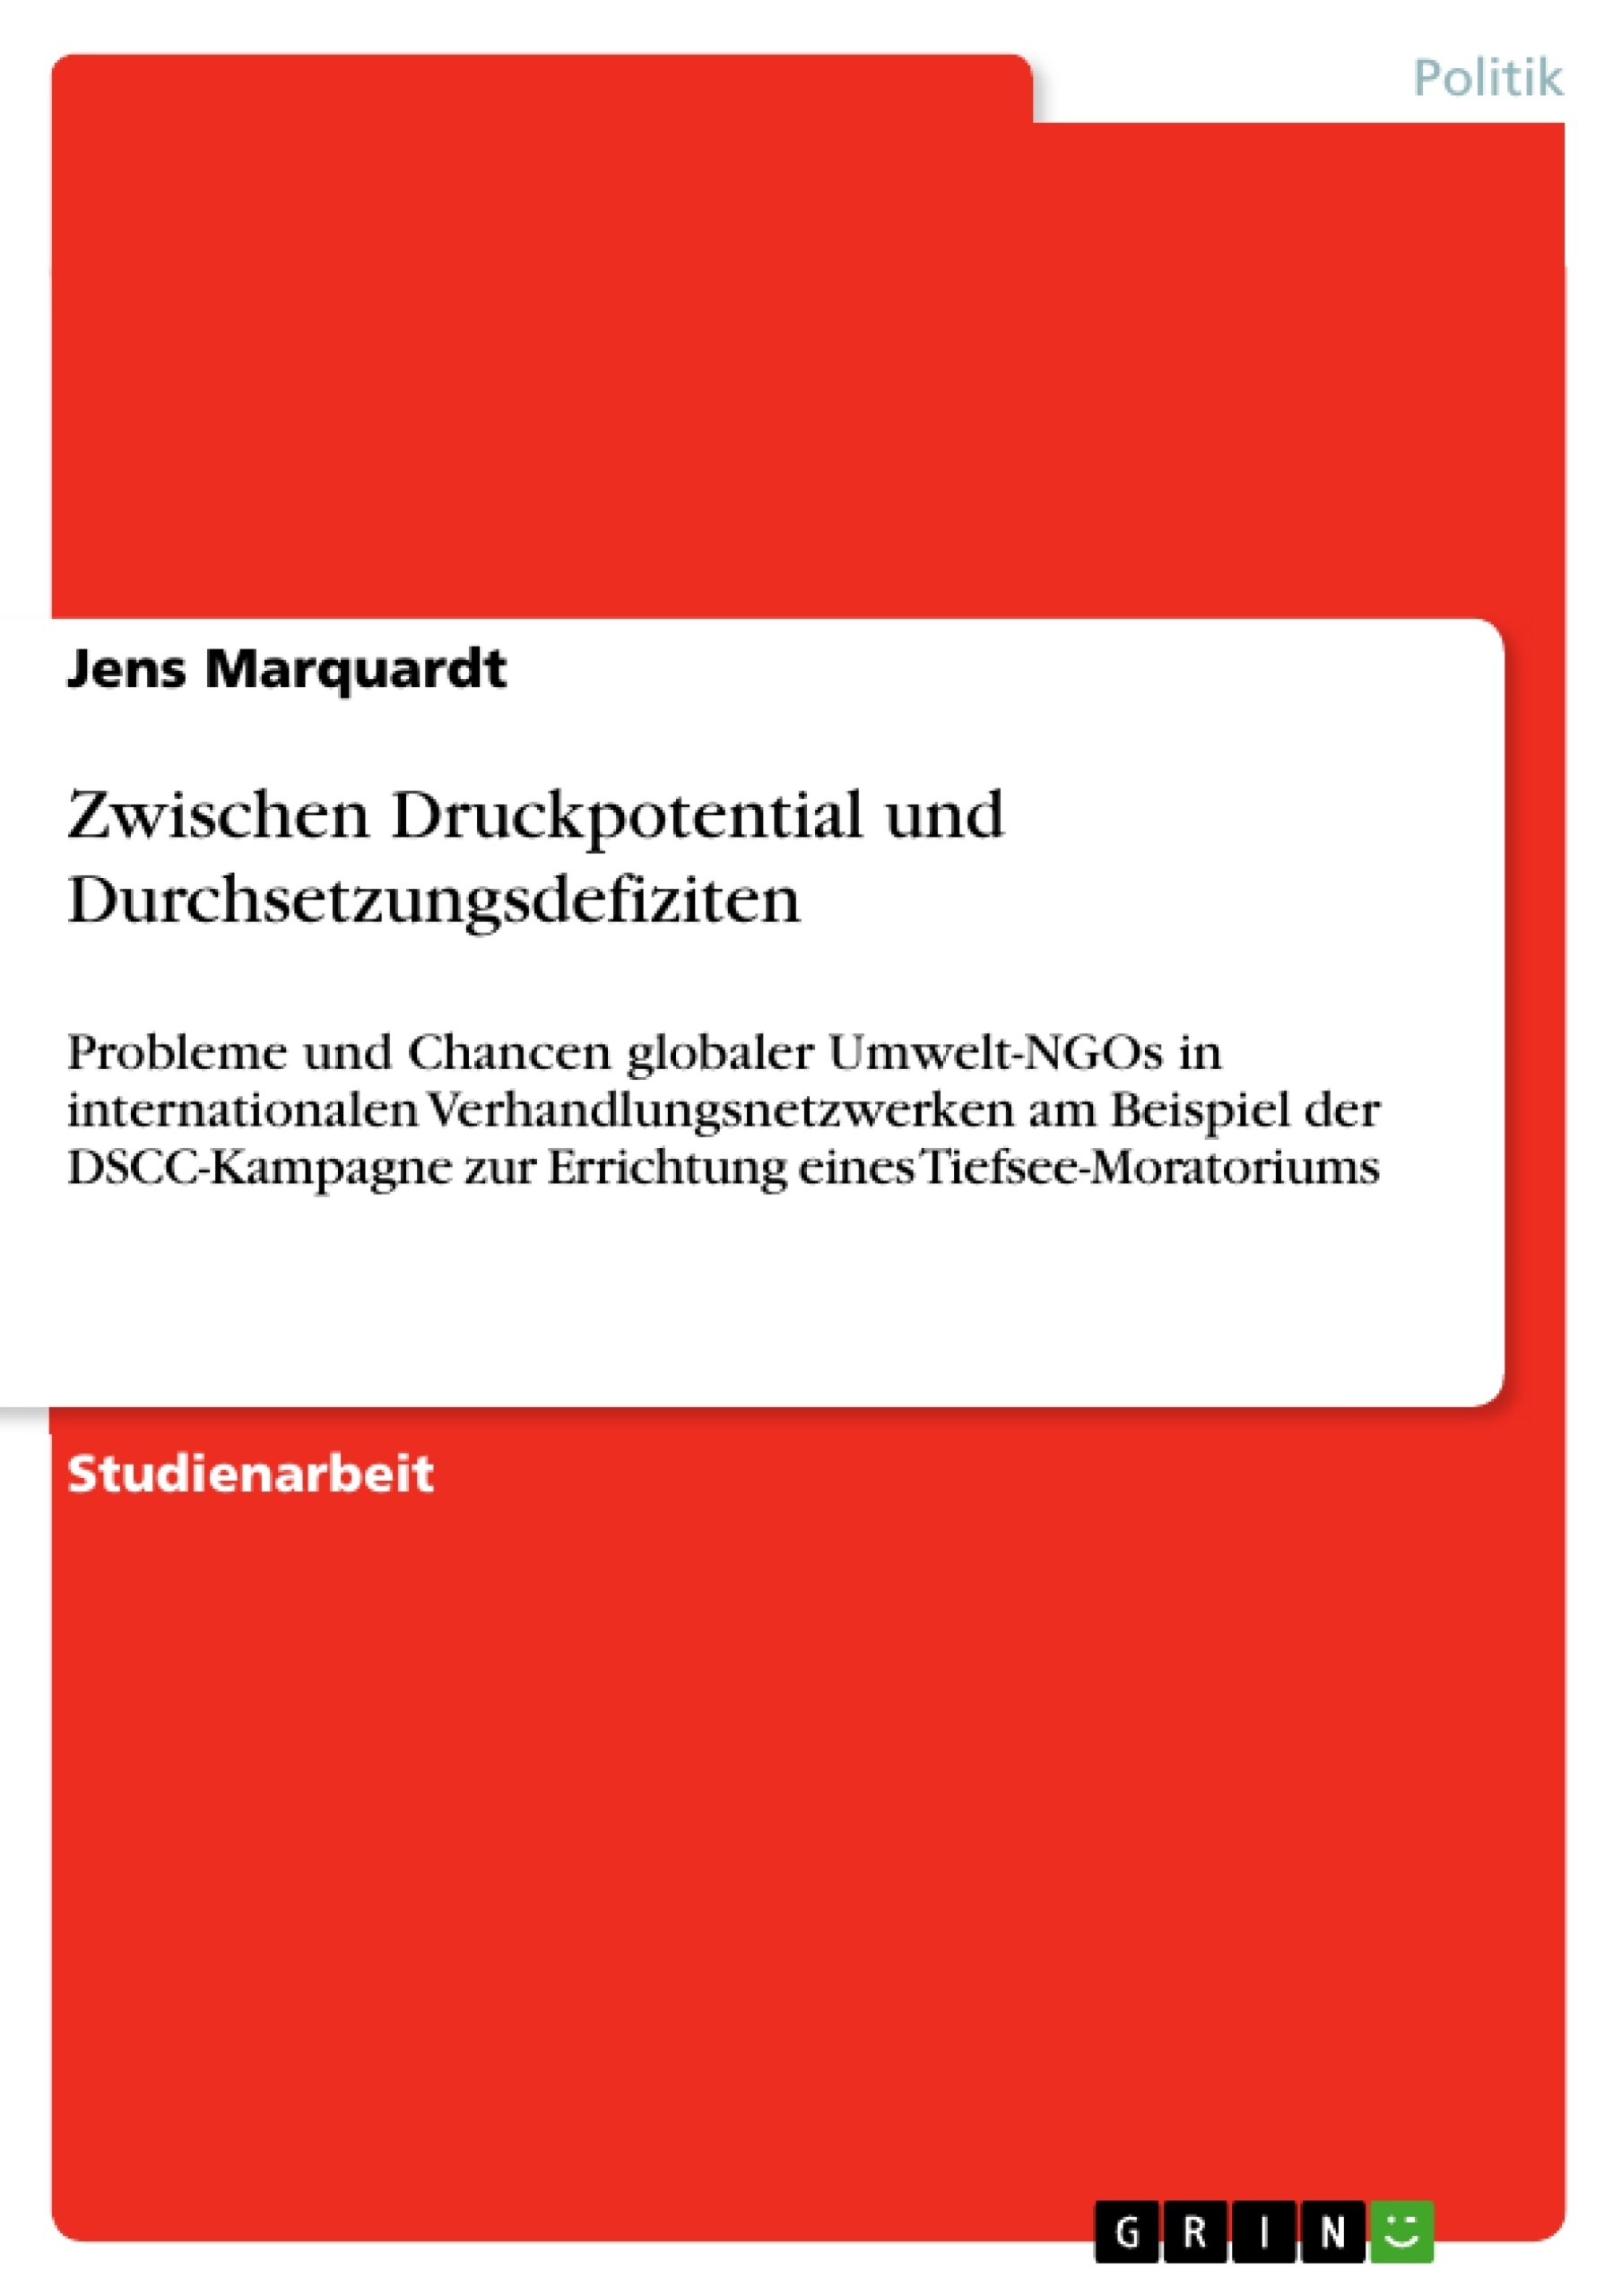 Titre: Zwischen Druckpotential und Durchsetzungsdefiziten